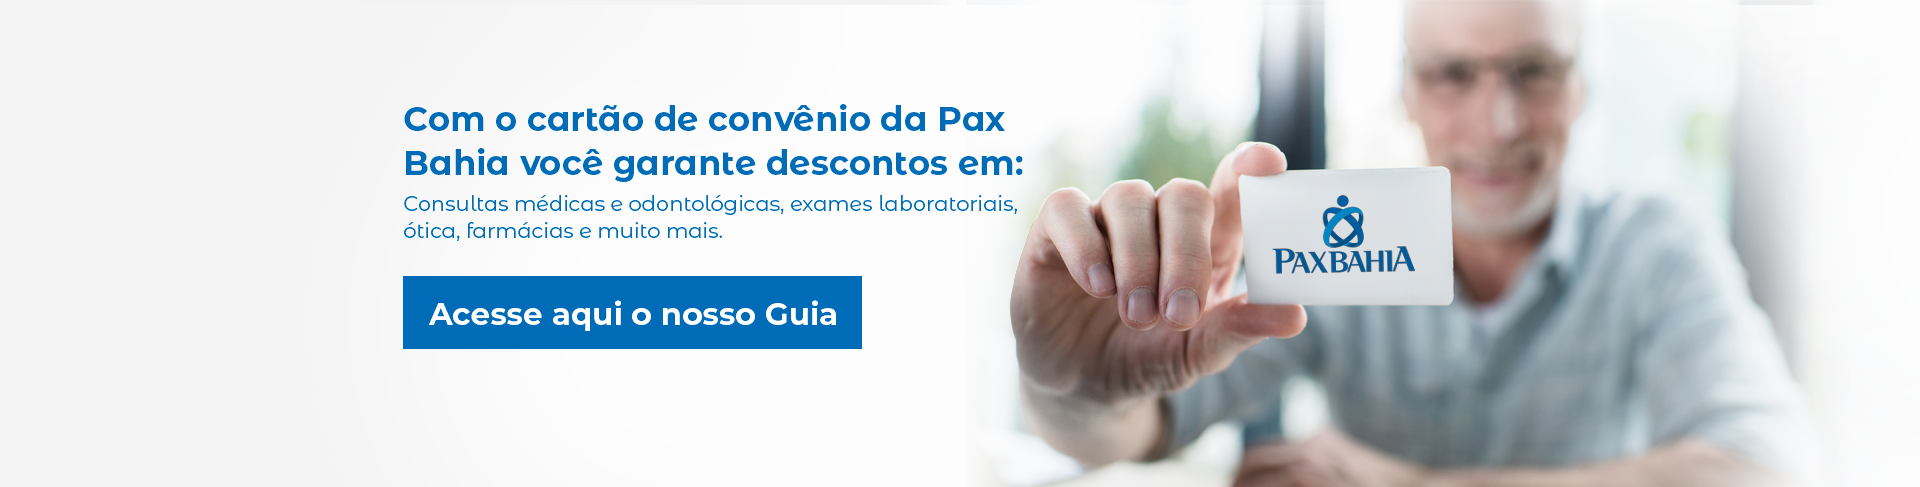 Pax Bahia